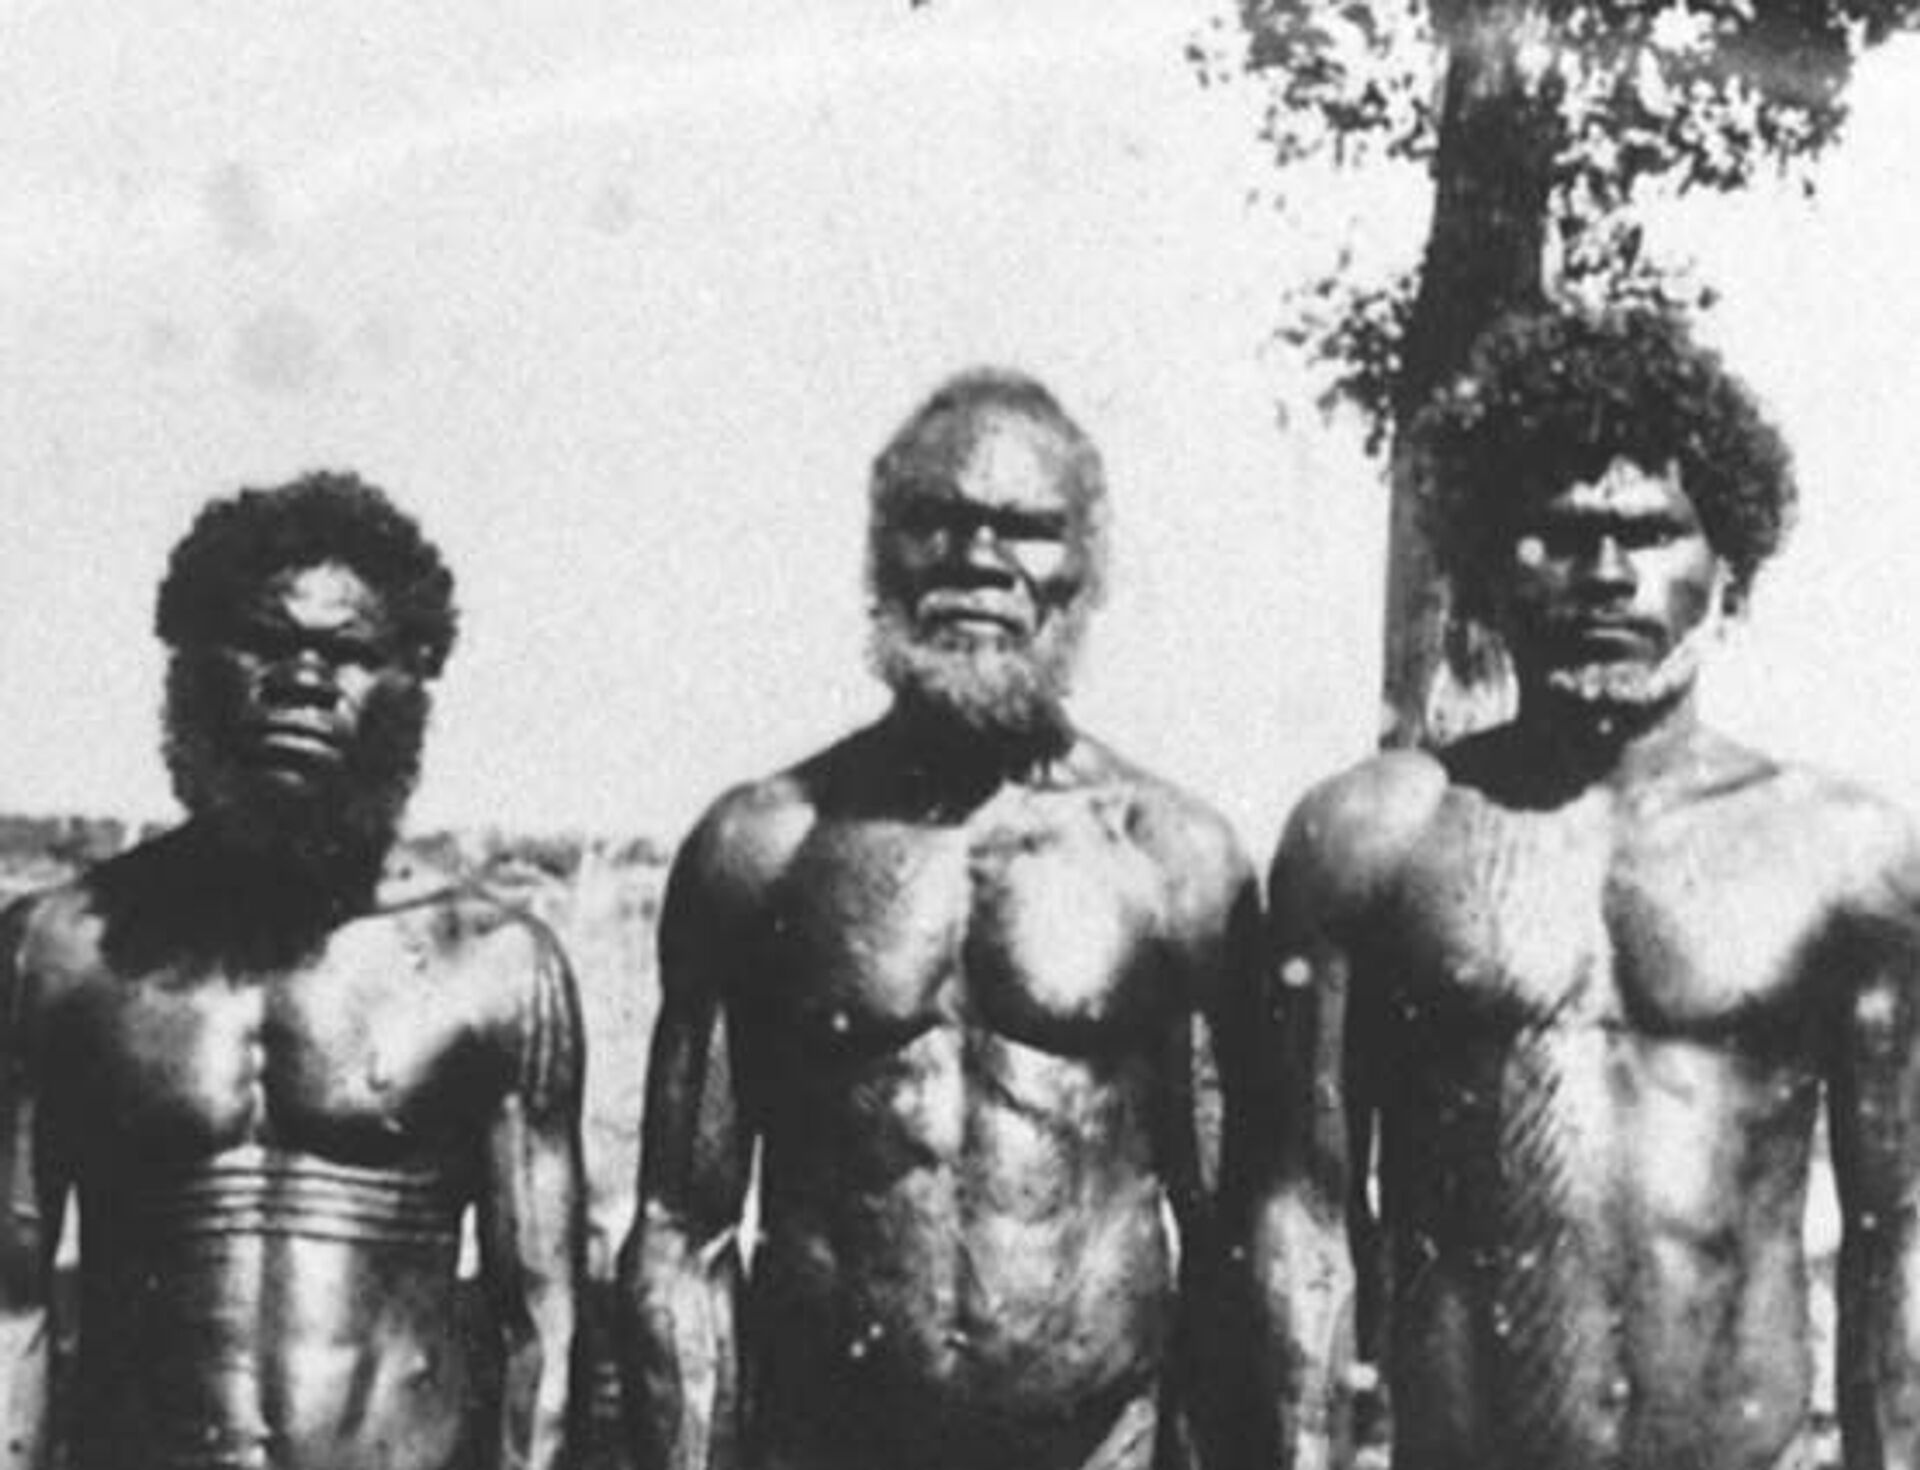 Método de memorização de aborígenes australianos usado há 50 mil anos supera o grego, diz pesquisa - Sputnik Brasil, 1920, 21.05.2021